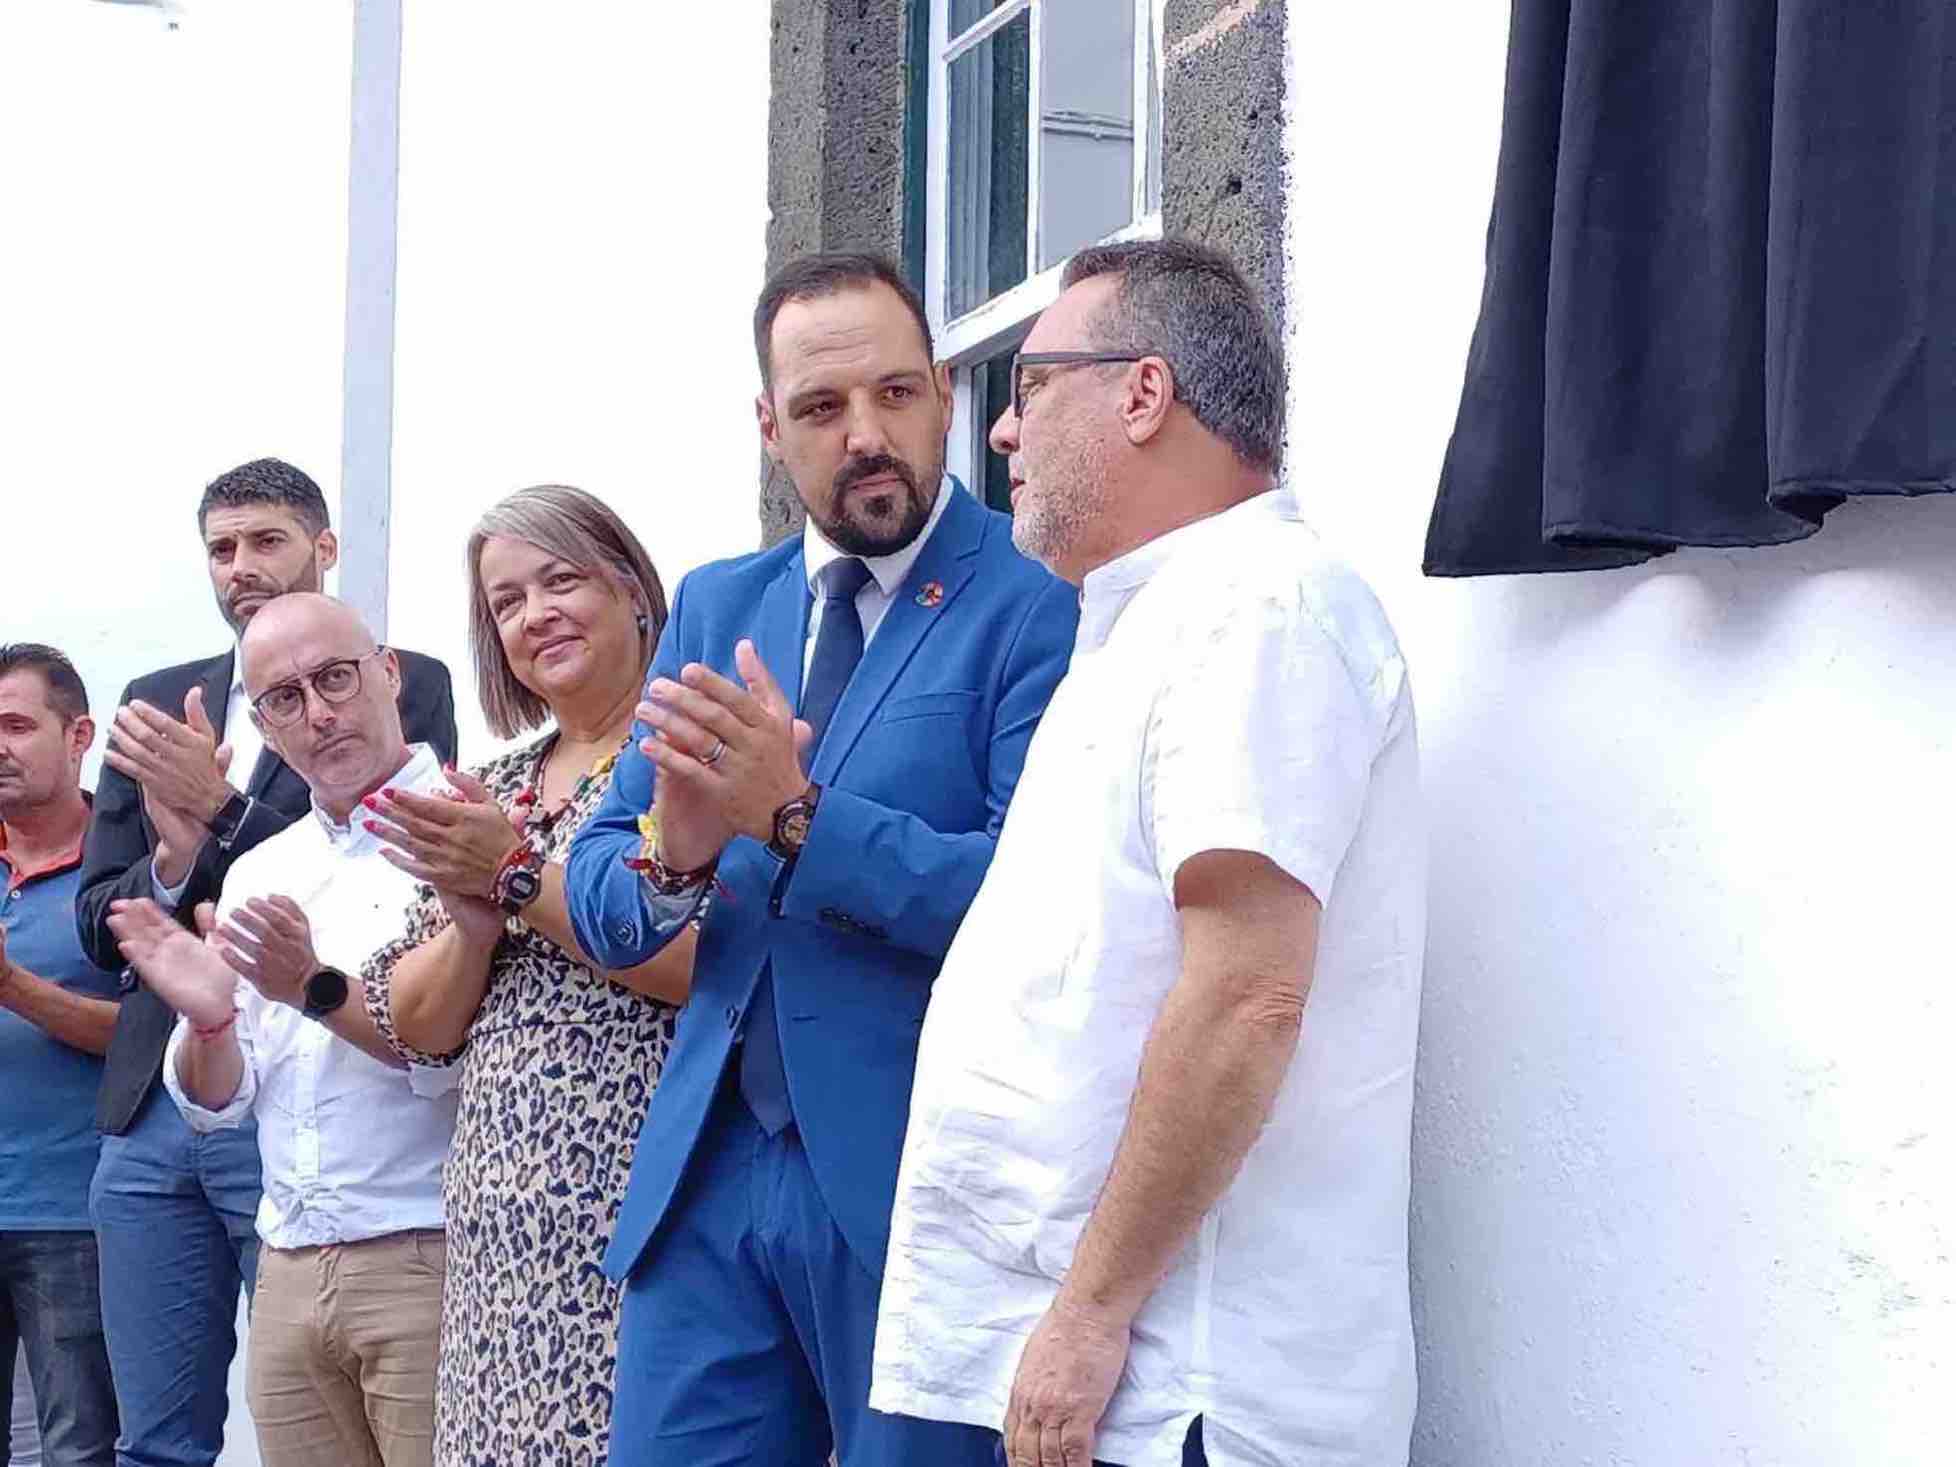 Breña Alta distingue a José Eduardo Martín y le pone su nombre a la Escuela Municipal de Folclore